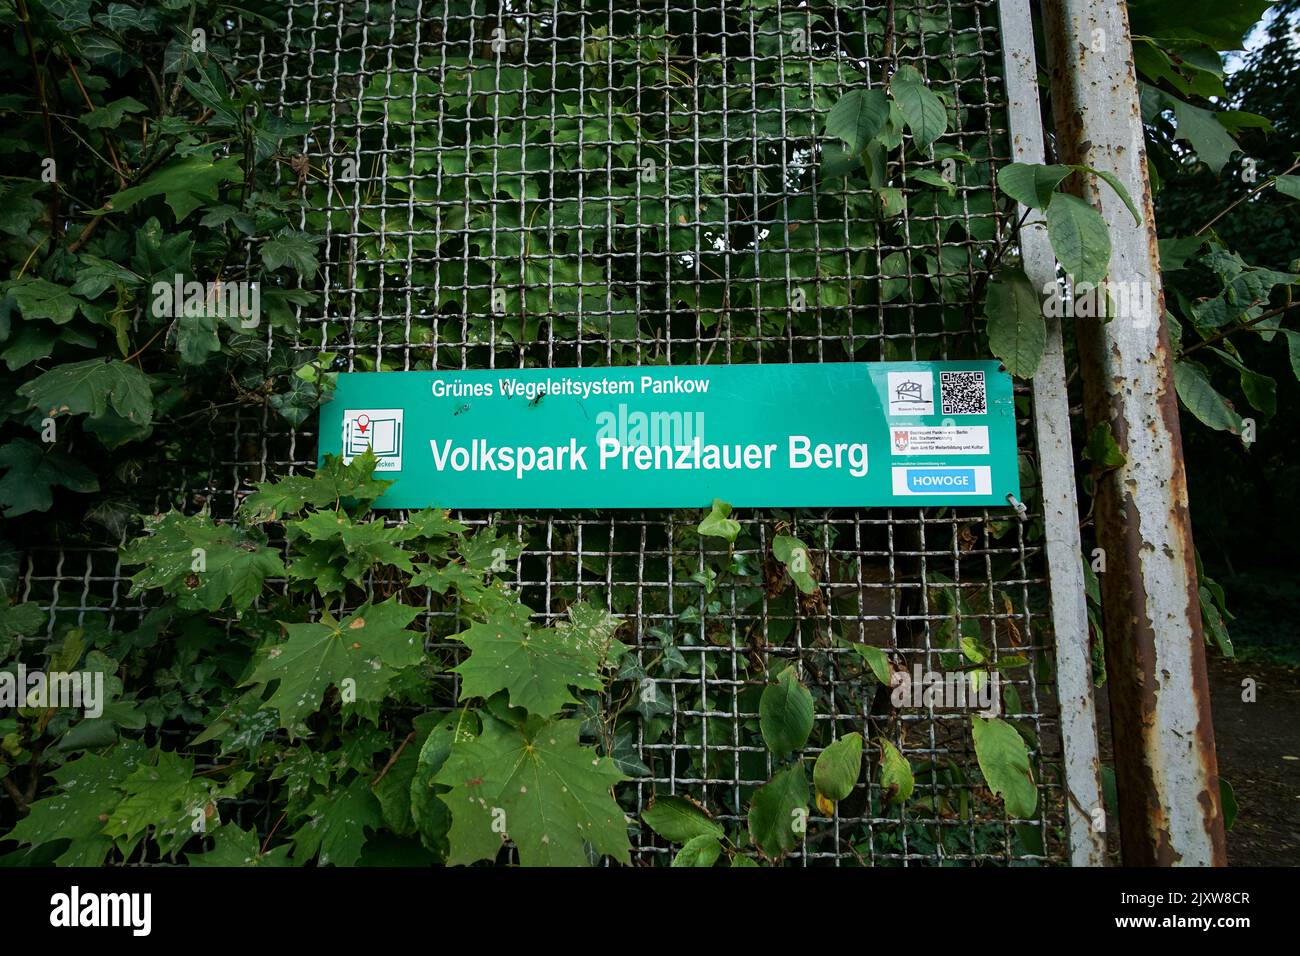 Volkspark Prenzlauer Berg (Schild) Foto de stock